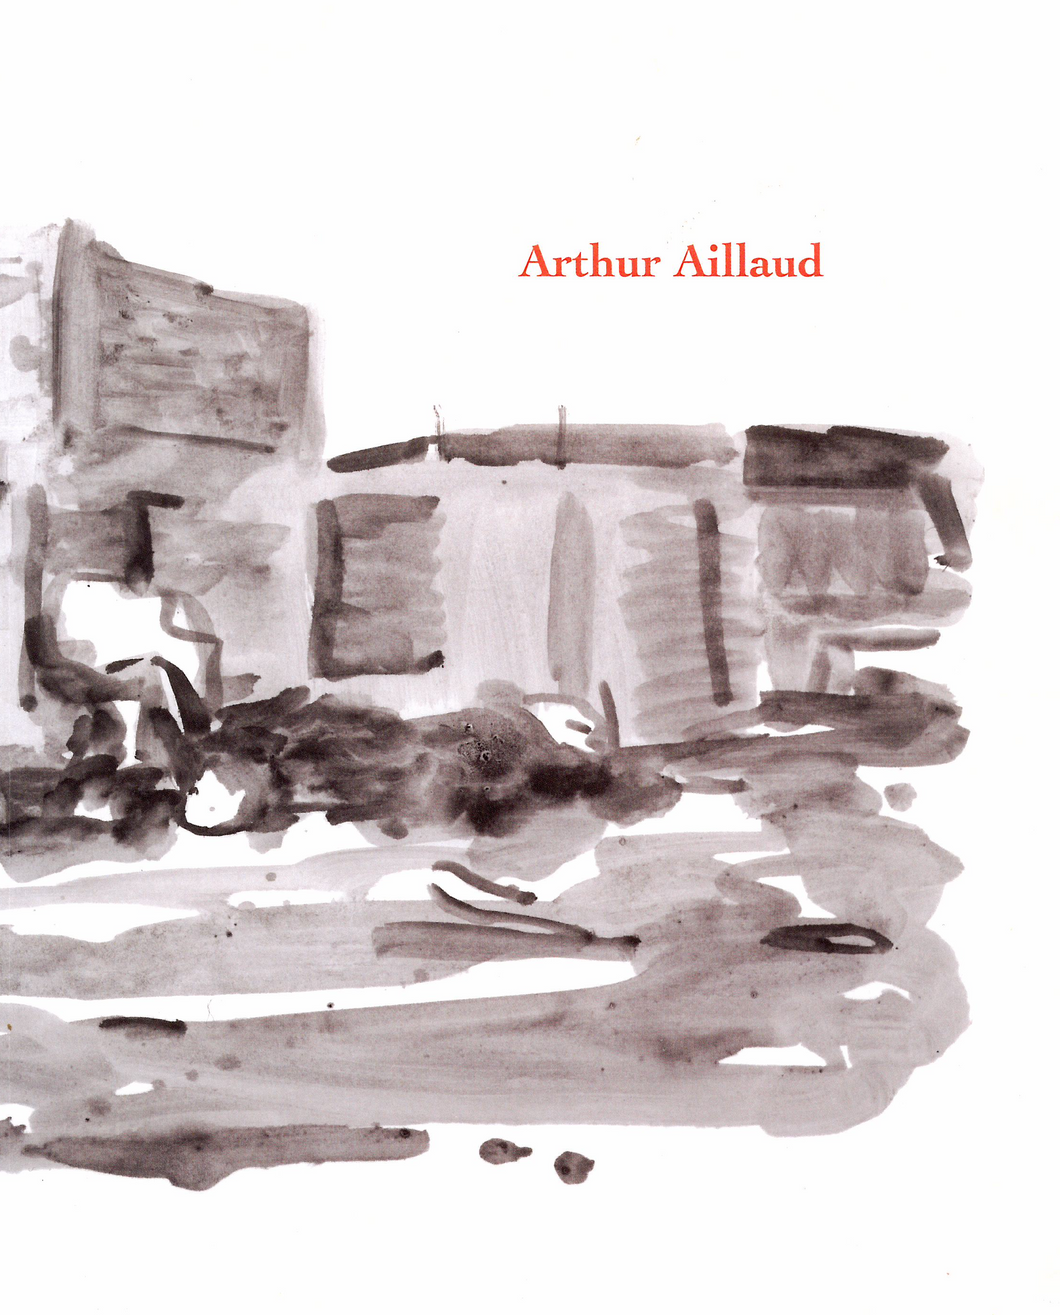 Arthur Aillaud, <i> Arthur Aillaud </i>, Éditions Galerie Vieille du Temple, 2010.